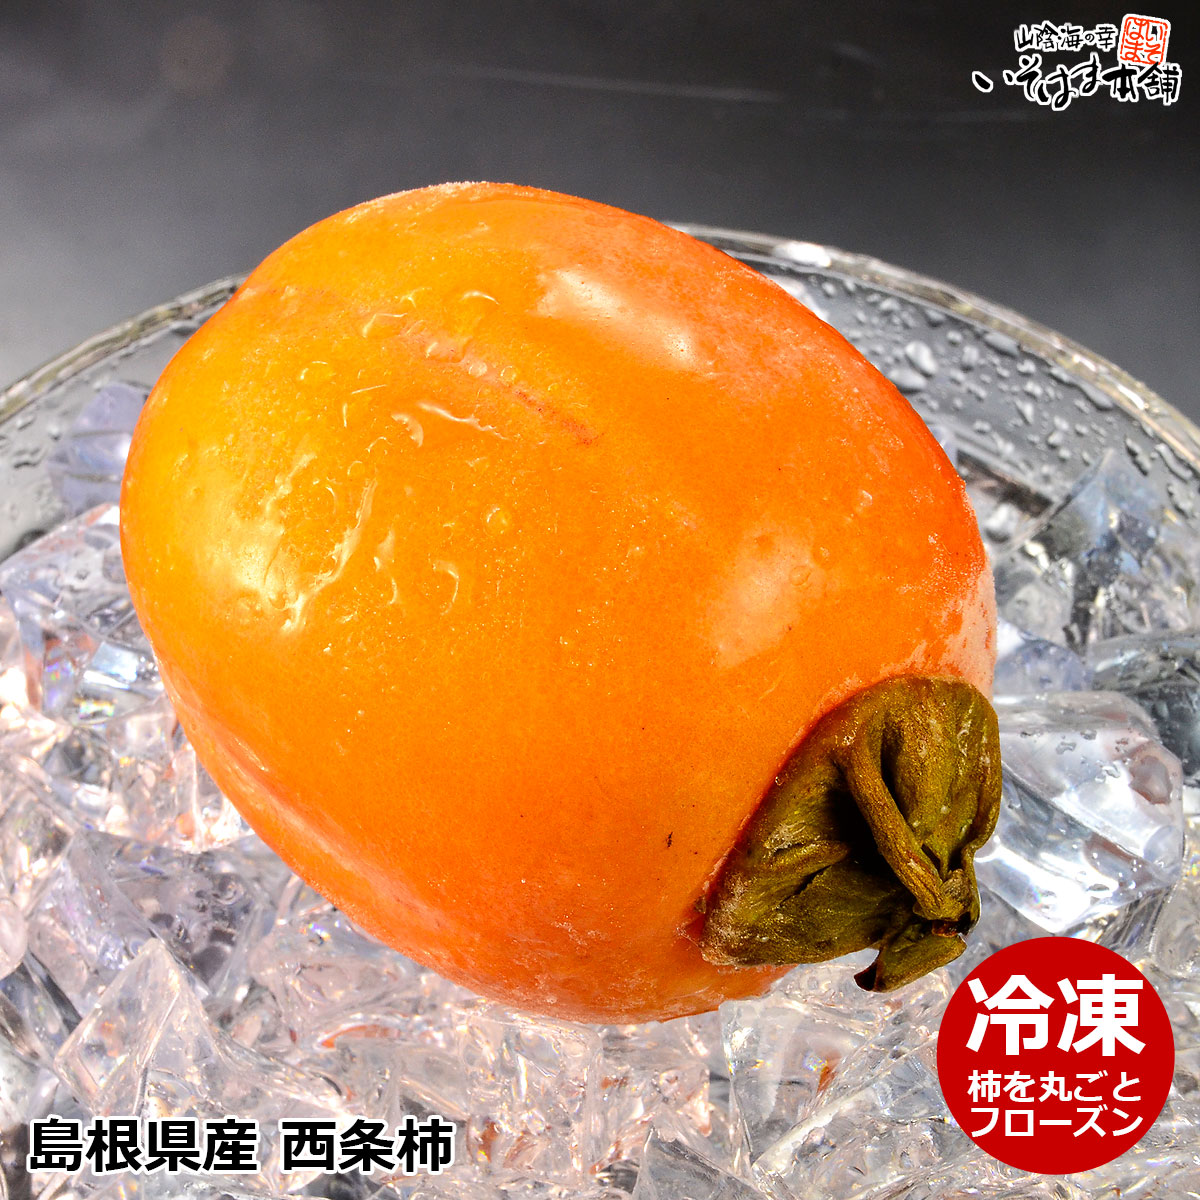 冷たいデザート、柿100％のシャーベット【冷凍】島根県産 西条柿 ( アイスカキ )